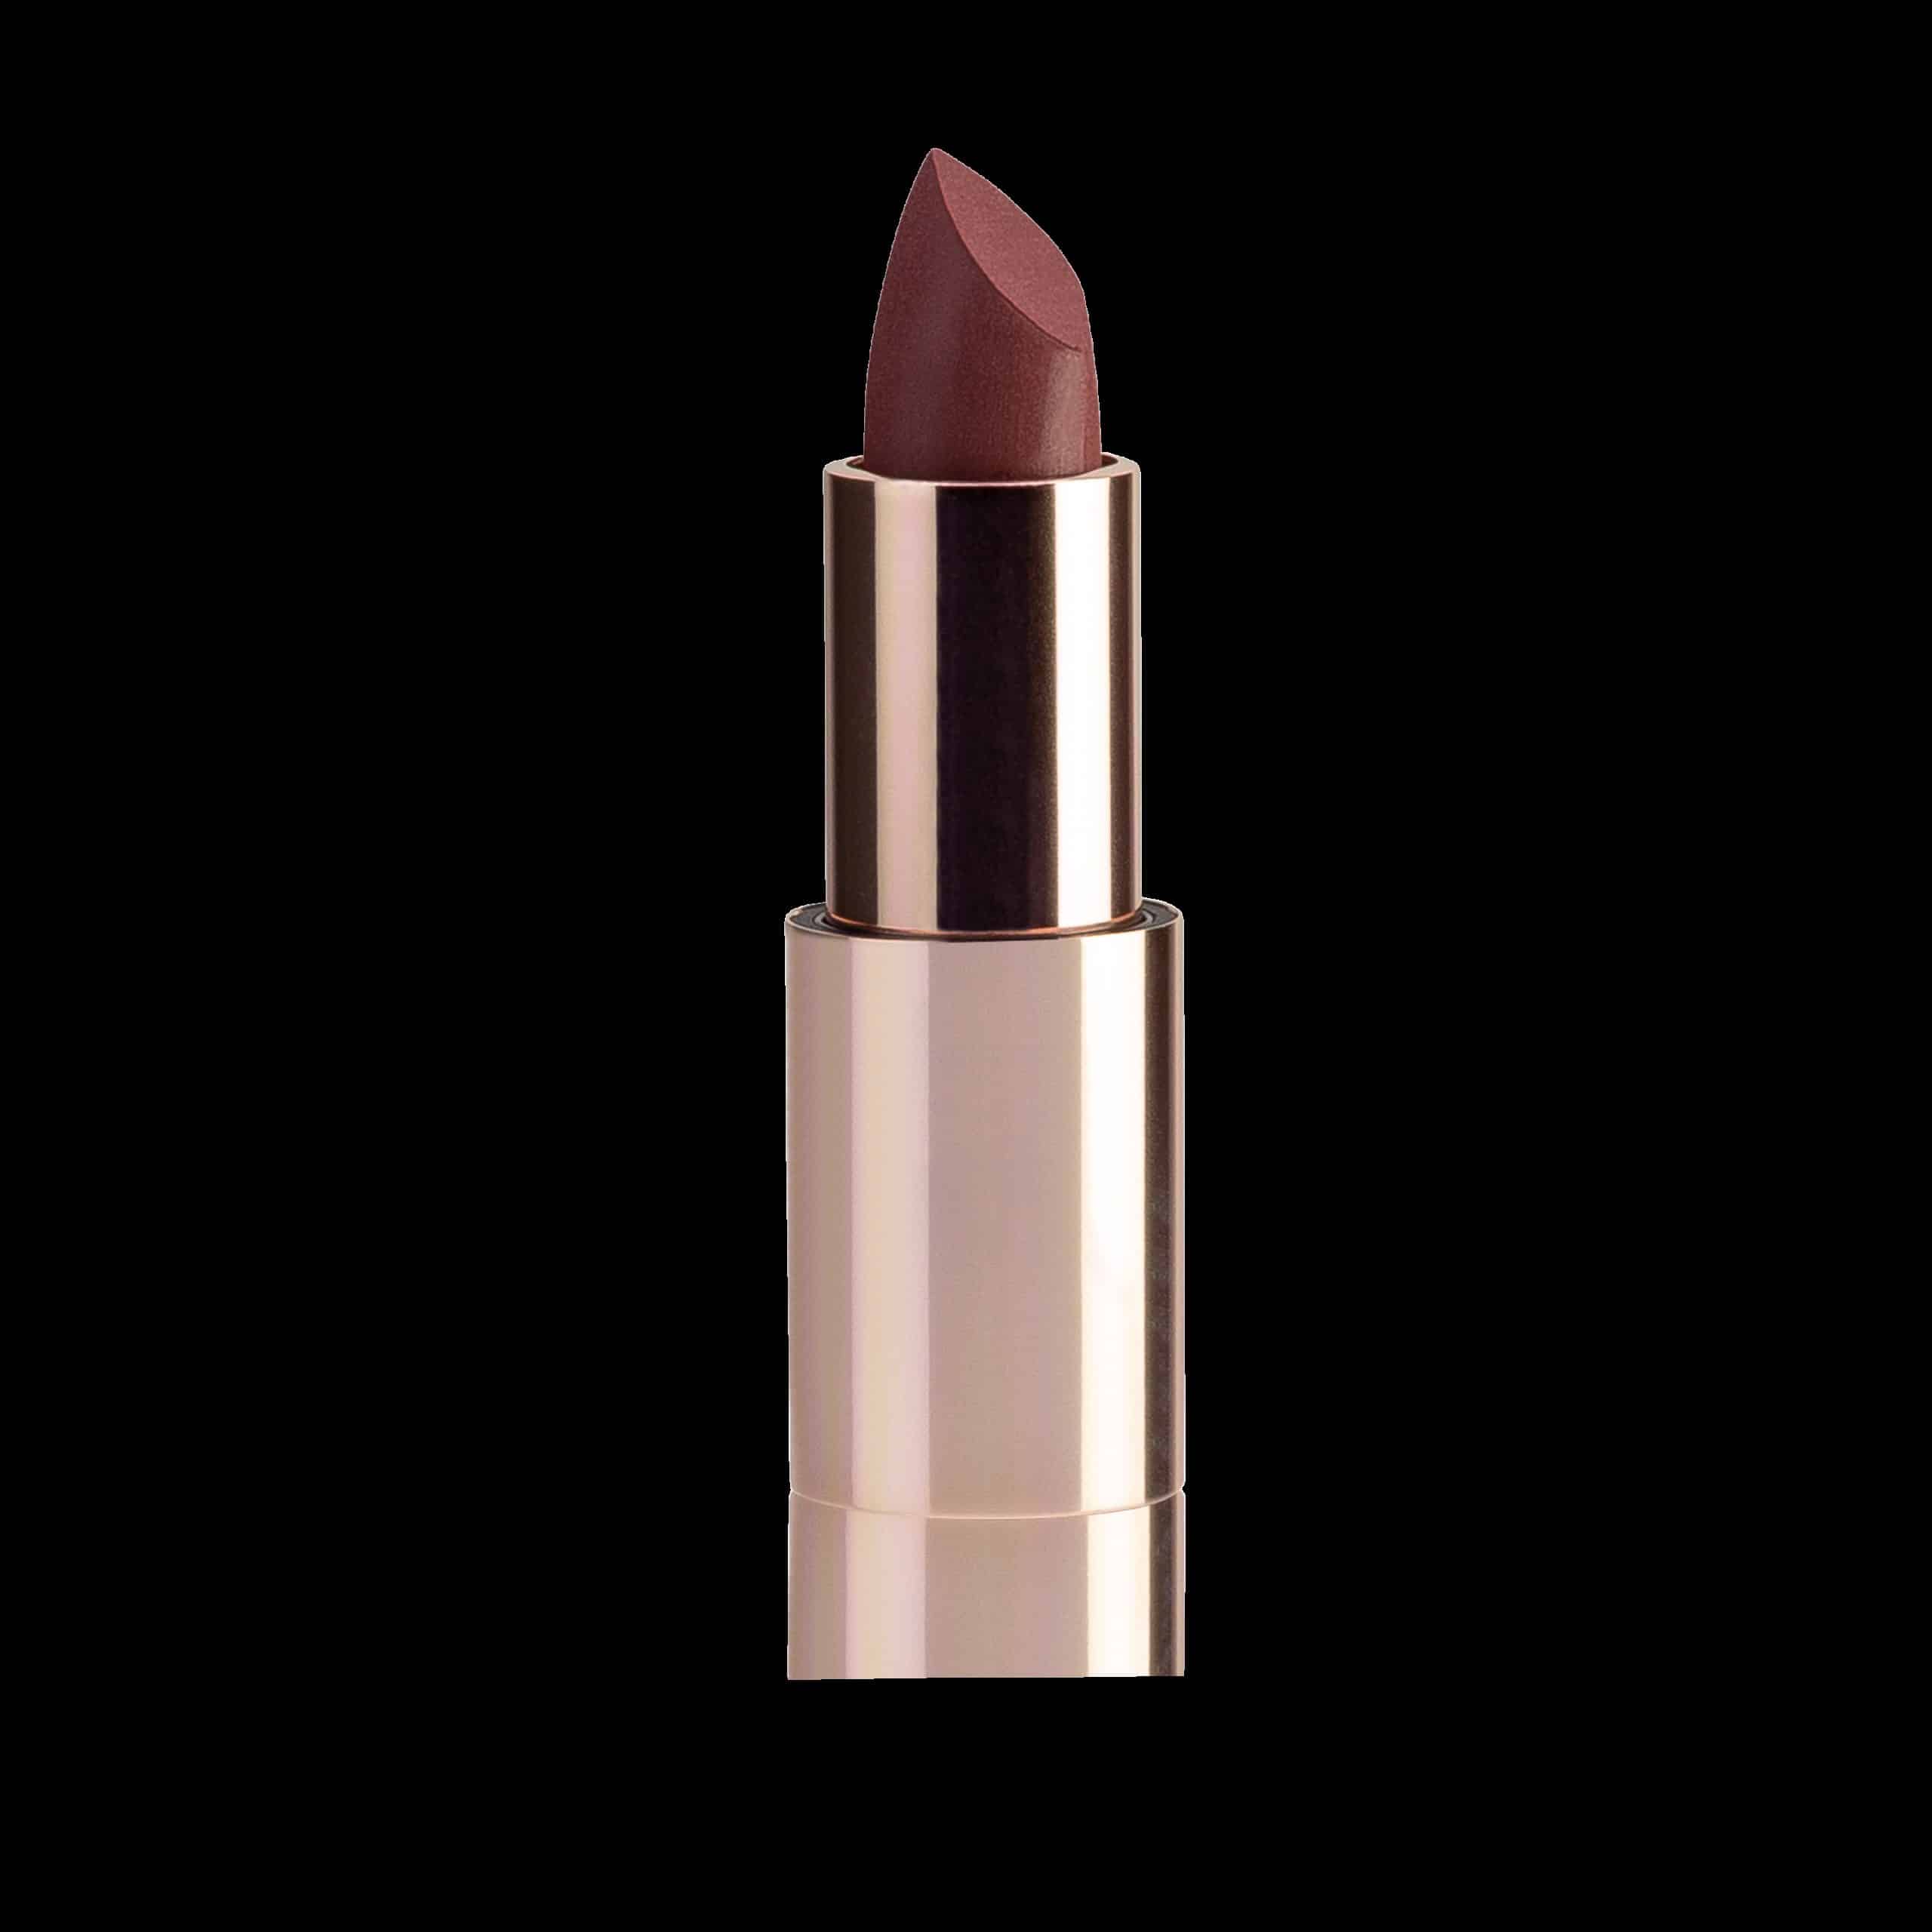 cosart-lipstick-elegance-geranie-3020-35g